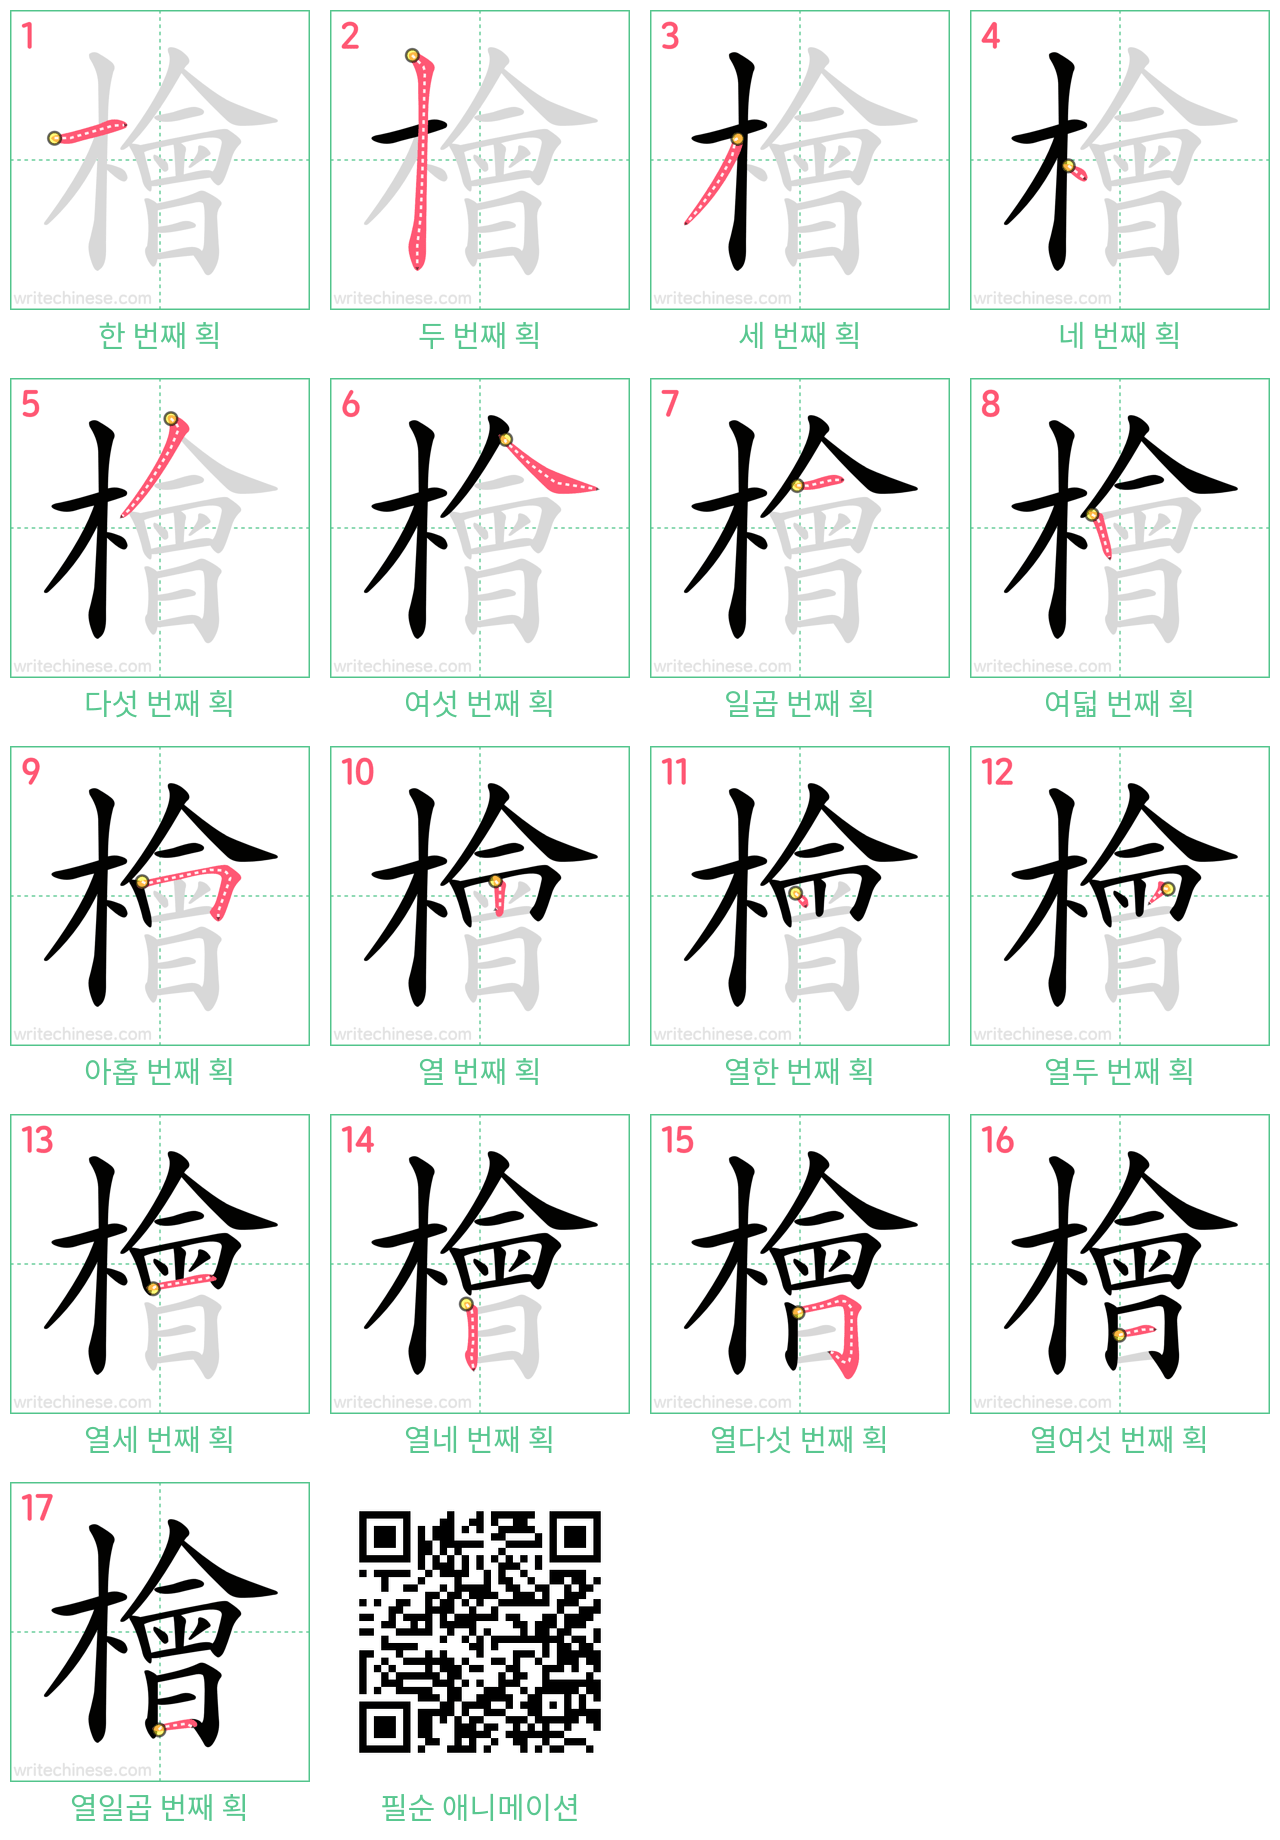 檜 step-by-step stroke order diagrams